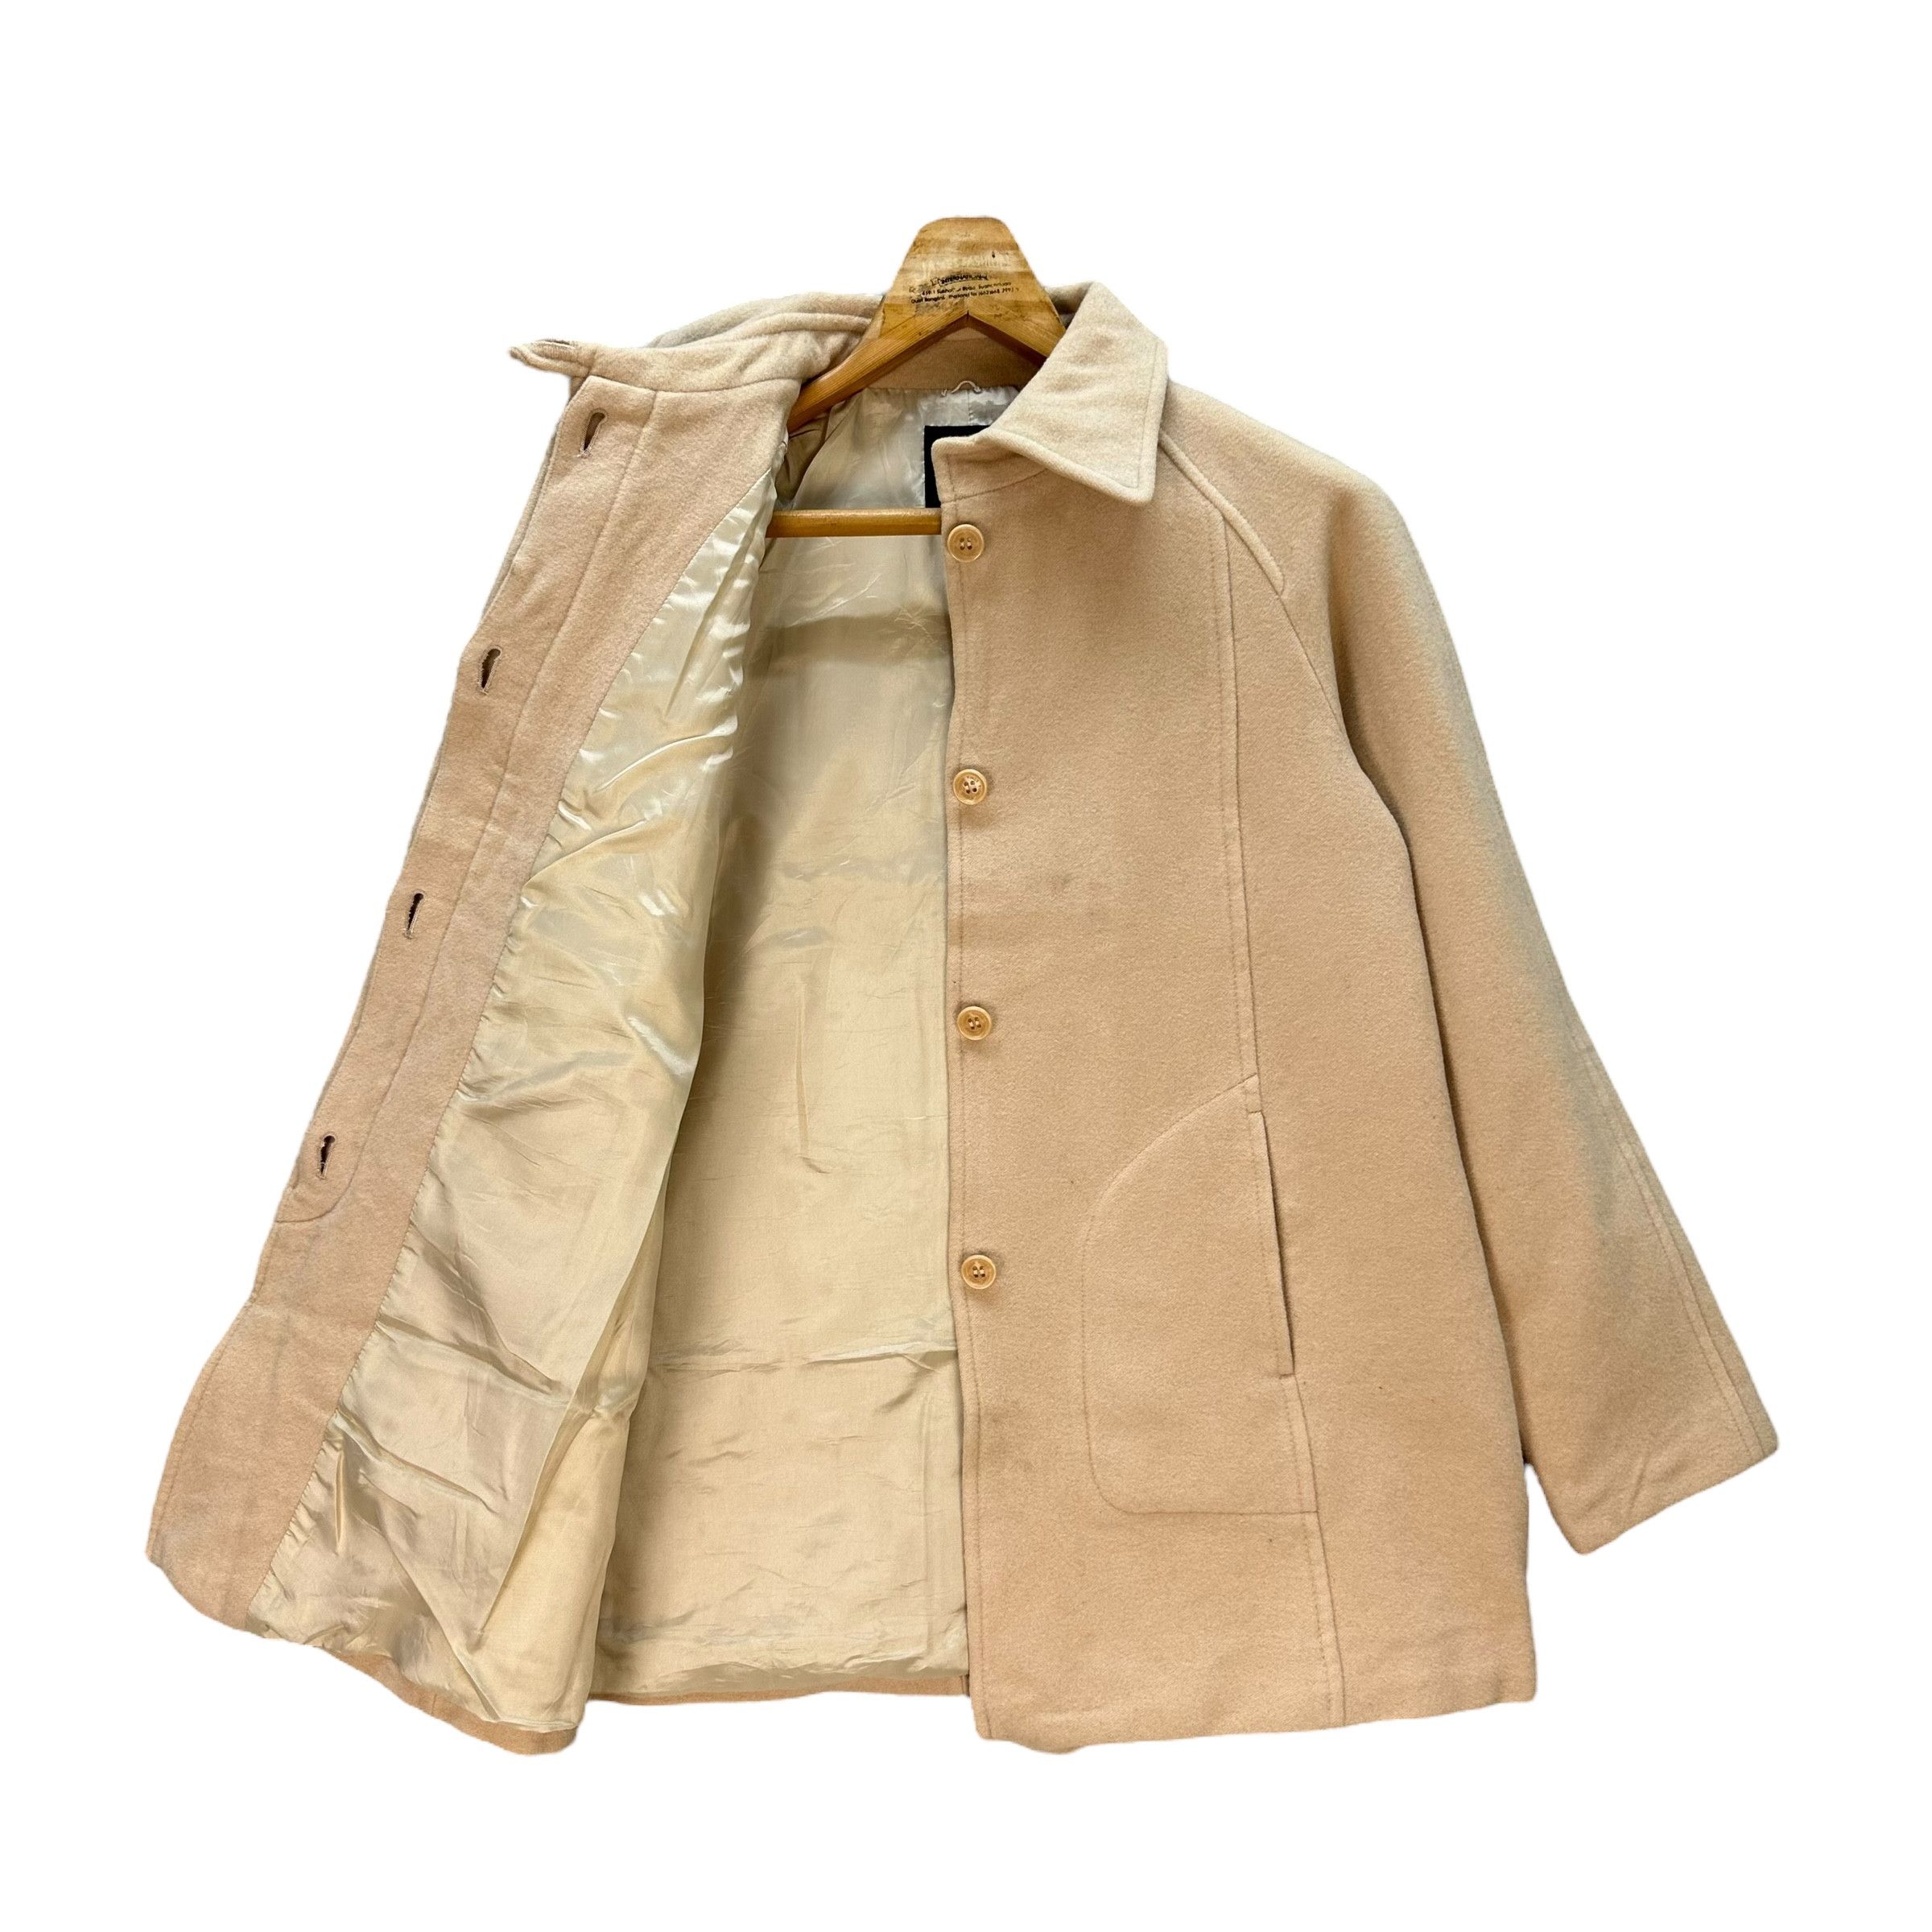 Vintage - Sonia Rykiel Wool Blend Coat Jacket #9117-58 - 7